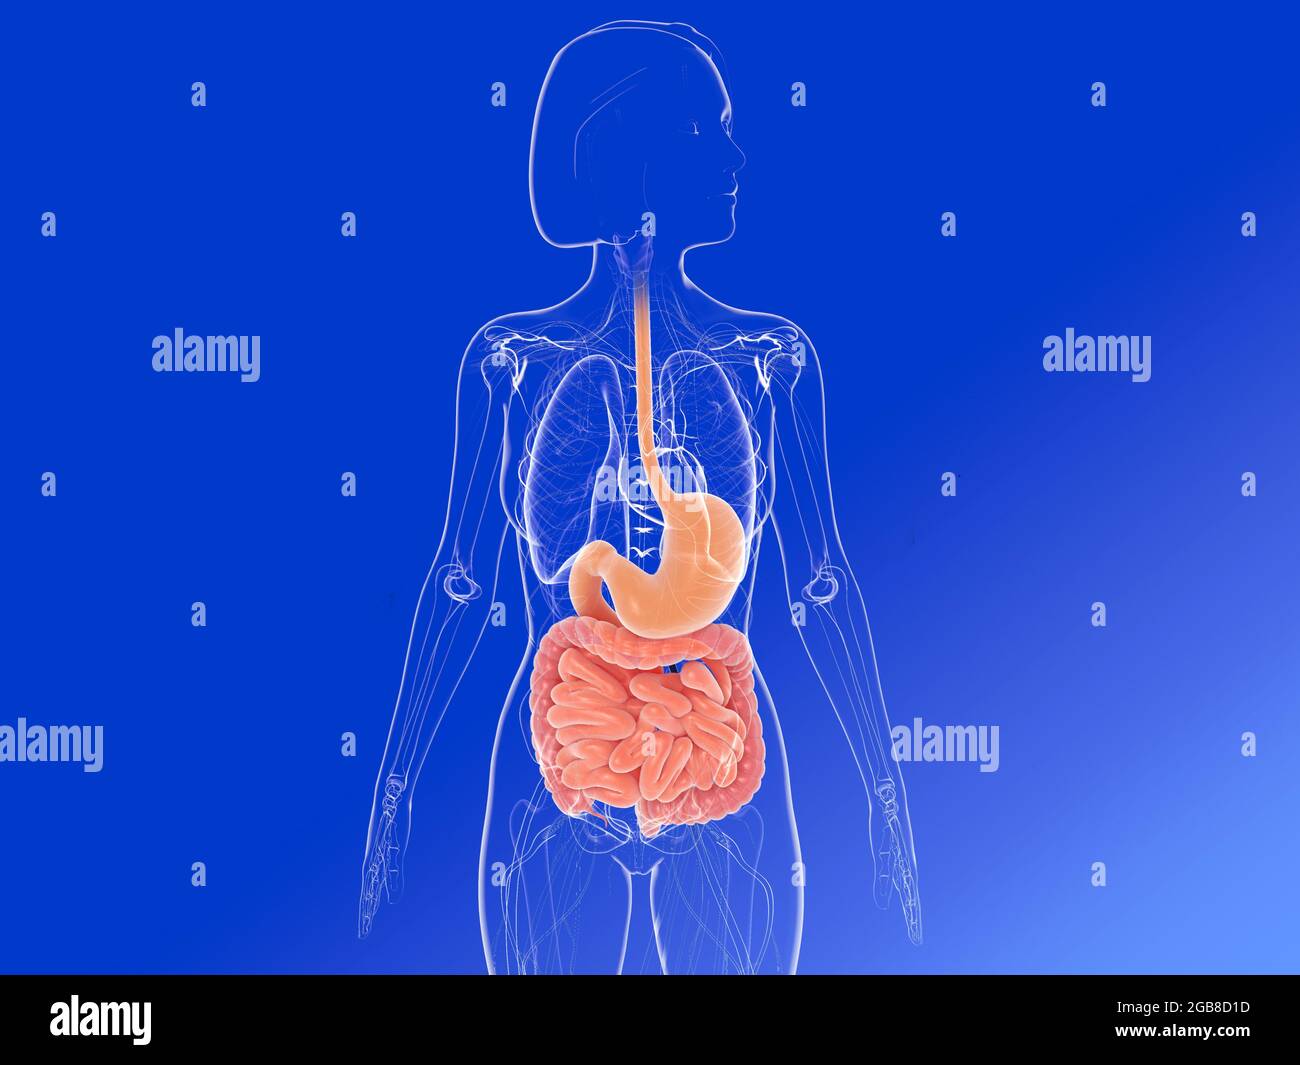 Illustrazione 3D della vista frontale dell'anatomia femminile, che mostra gli organi interni evidenziando lo stomaco e gli intestini. Immagine trasparente. Foto Stock